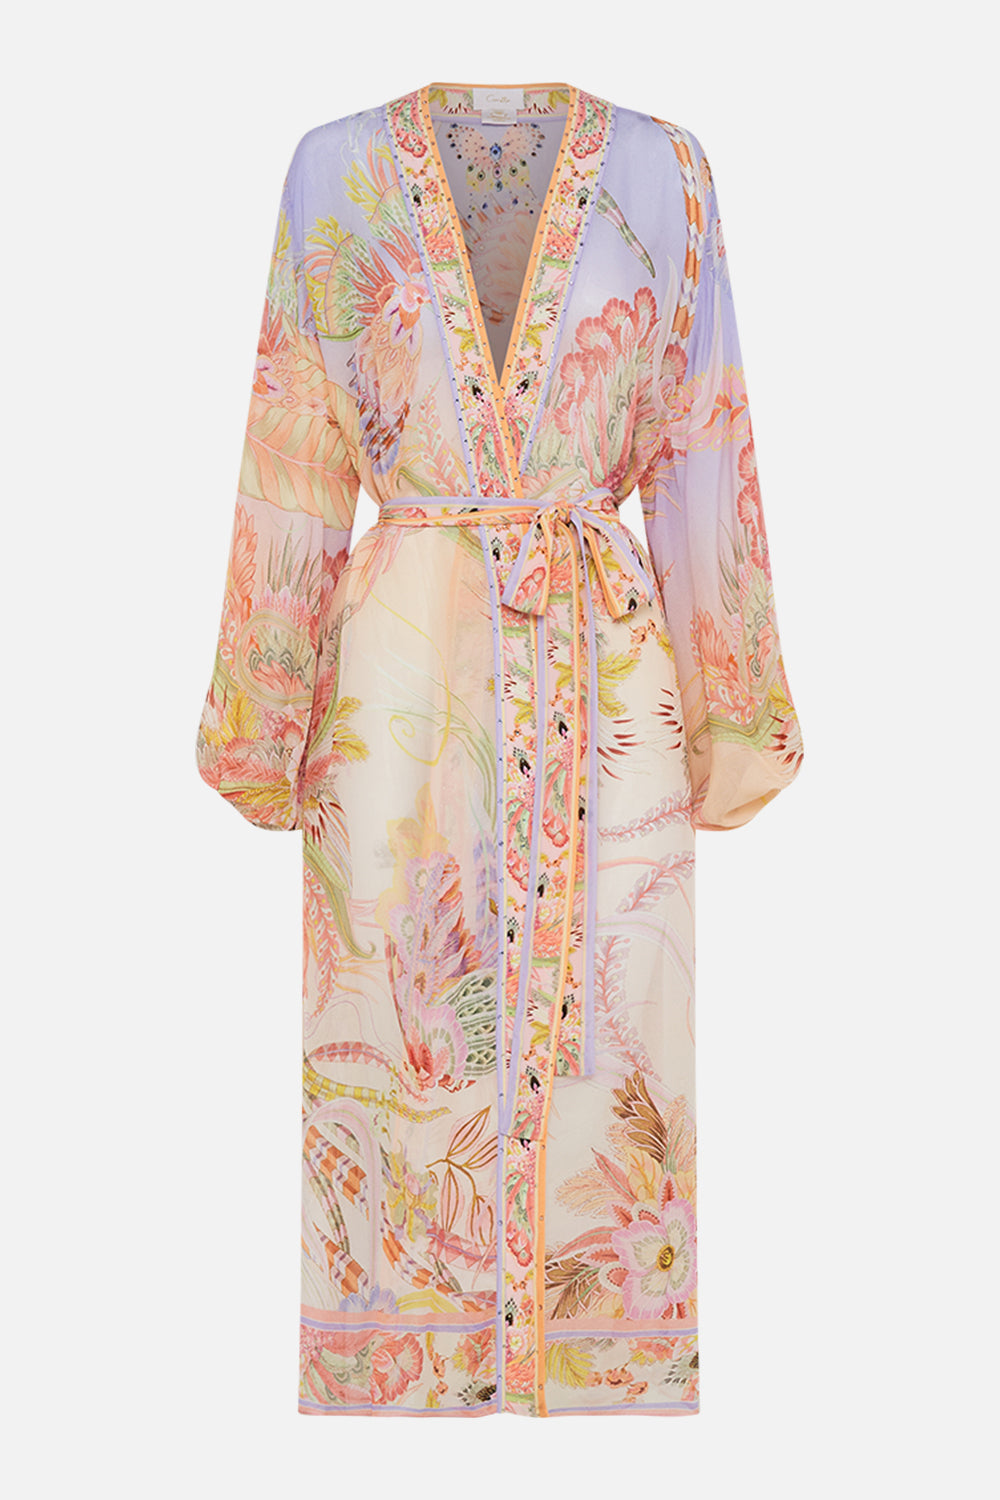 Product view of CAMILLA silk kimono in Cosmic Tuscna print